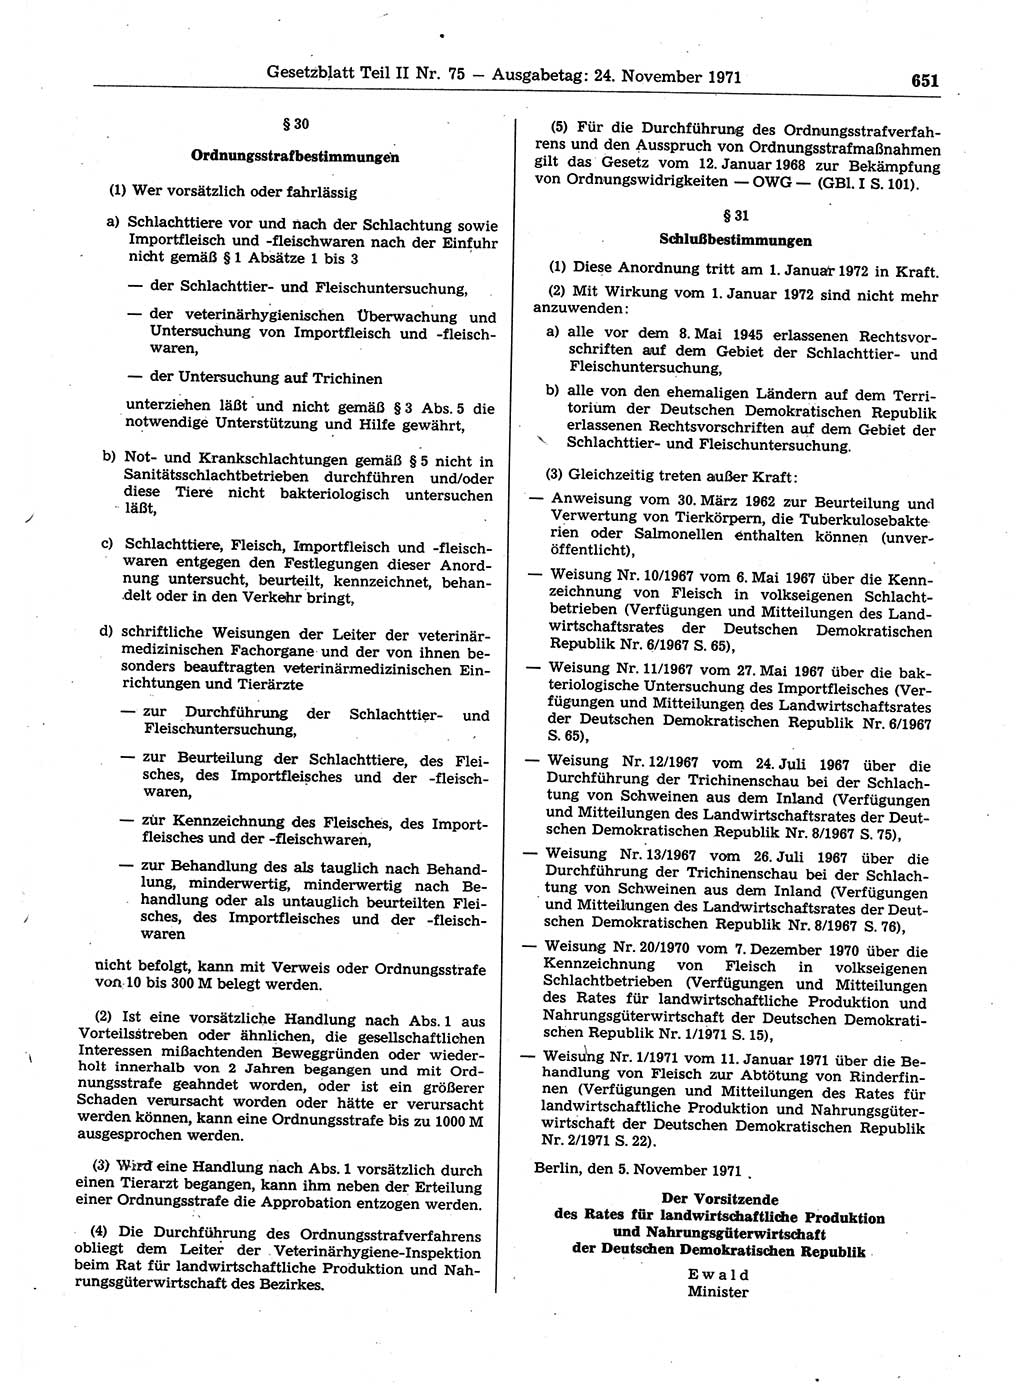 Gesetzblatt (GBl.) der Deutschen Demokratischen Republik (DDR) Teil ⅠⅠ 1971, Seite 651 (GBl. DDR ⅠⅠ 1971, S. 651)